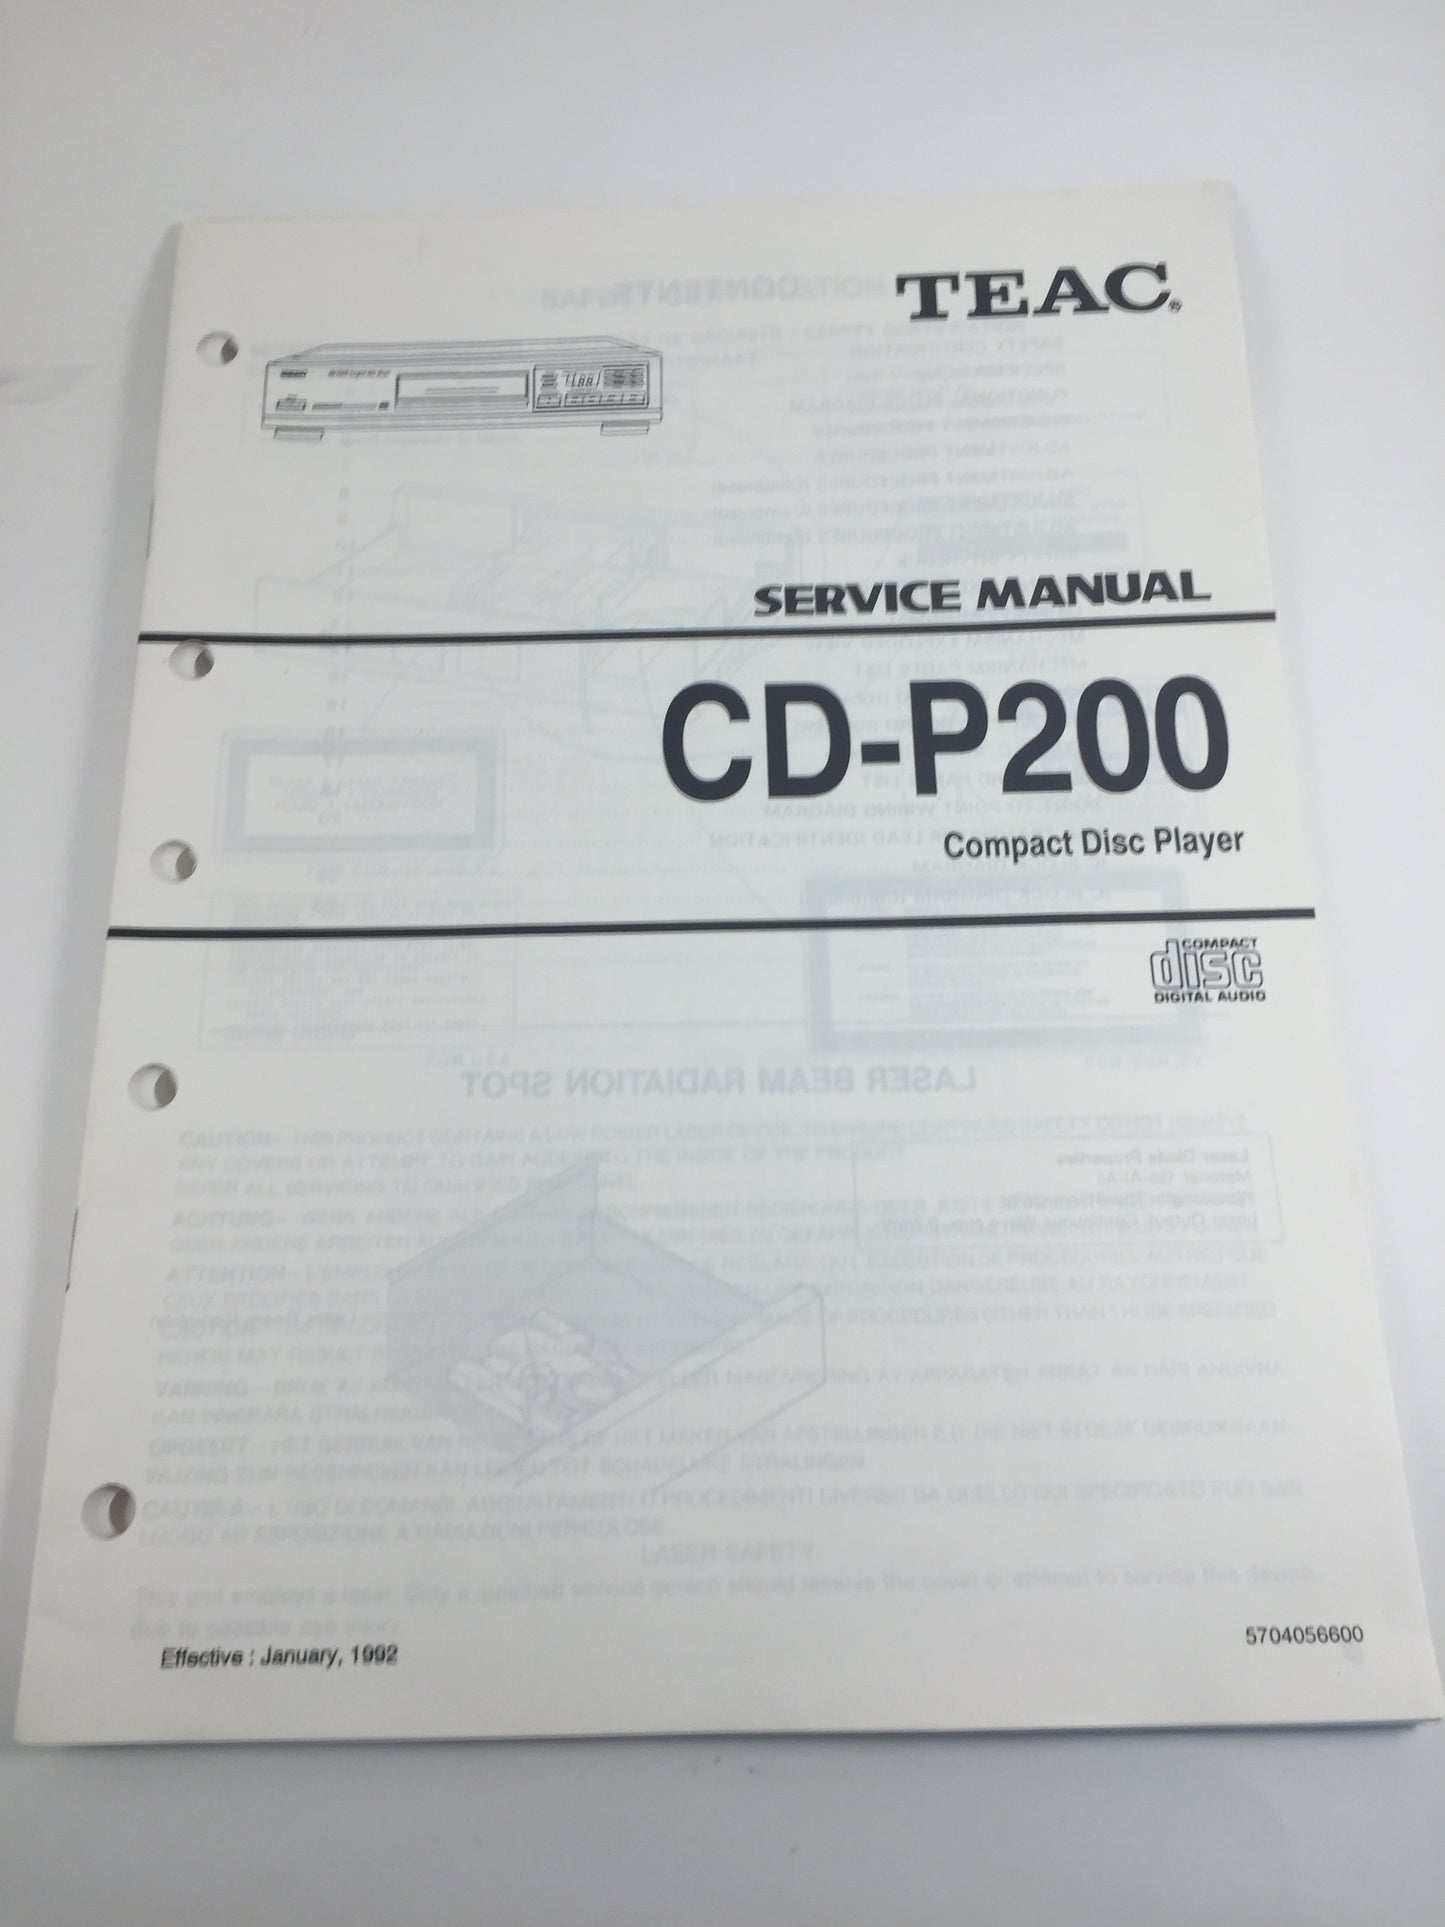 TEAC CD-P200 Compact Disc Player Service Manual